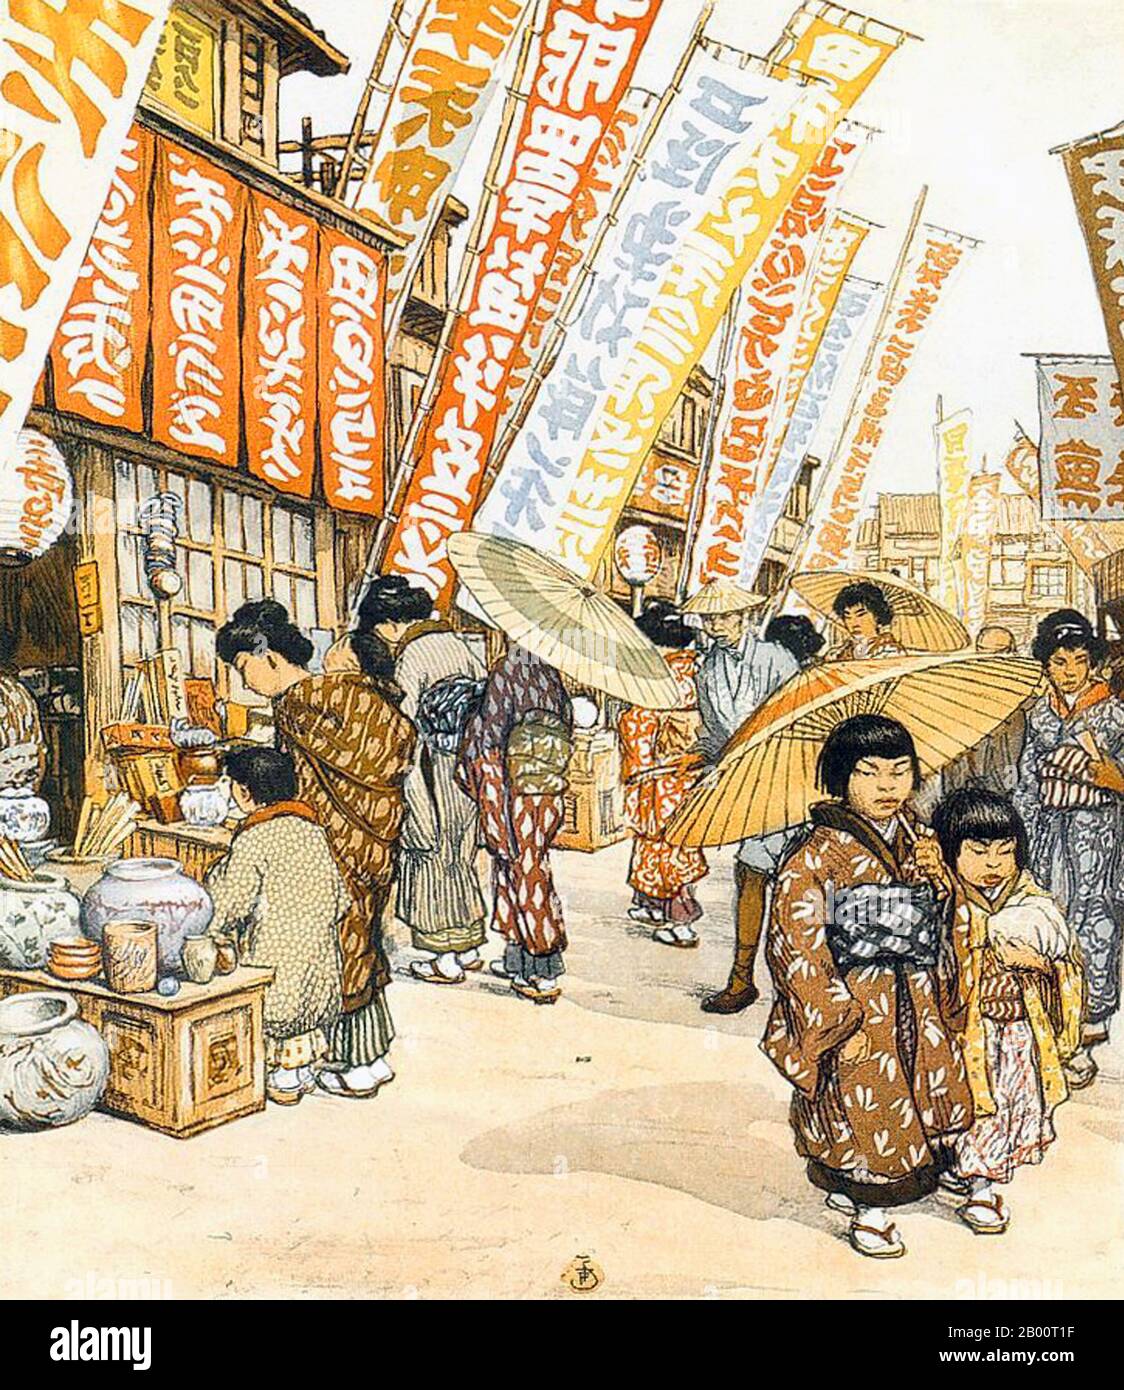 Japon/Tchécoslovaquie: "Une rue commerçante à Kyoto". Peinture par T. F. Simon (1877-1942), c. 1928. Tavik Frantisek Simon (1877-1942) est un peintre tchèque, un graveur et un artiste de la coupe du bois. Bien que basé principalement en Europe, ses voyages importants l'ont conduit au Maroc, Ceylan (aujourd'hui Sri Lanka), en Inde, et au Japon, des images de tous ceux qui apparaissent dans son travail artistique. Il meurt à Prague en 1942. Largement ignoré pendant l'ère communiste en Tchécoslovaquie, son travail a reçu une plus grande attention ces dernières années. Banque D'Images